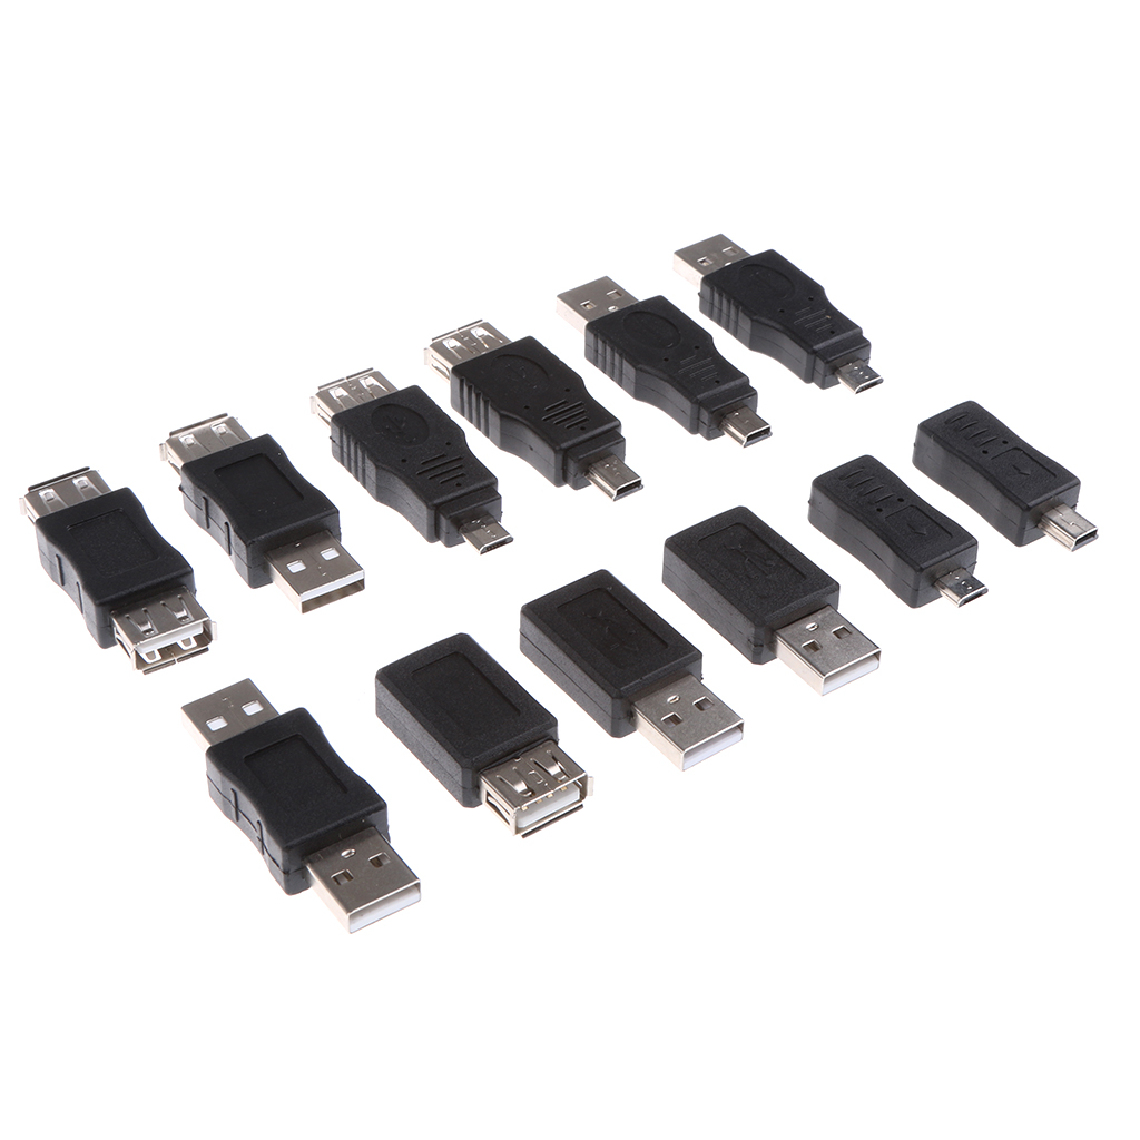 marque generique - 12-in-1 USB 2.0 Mâle vers Femelle Adaptateur Data Sync Connecteur pour Ordinateur Portable - Hub